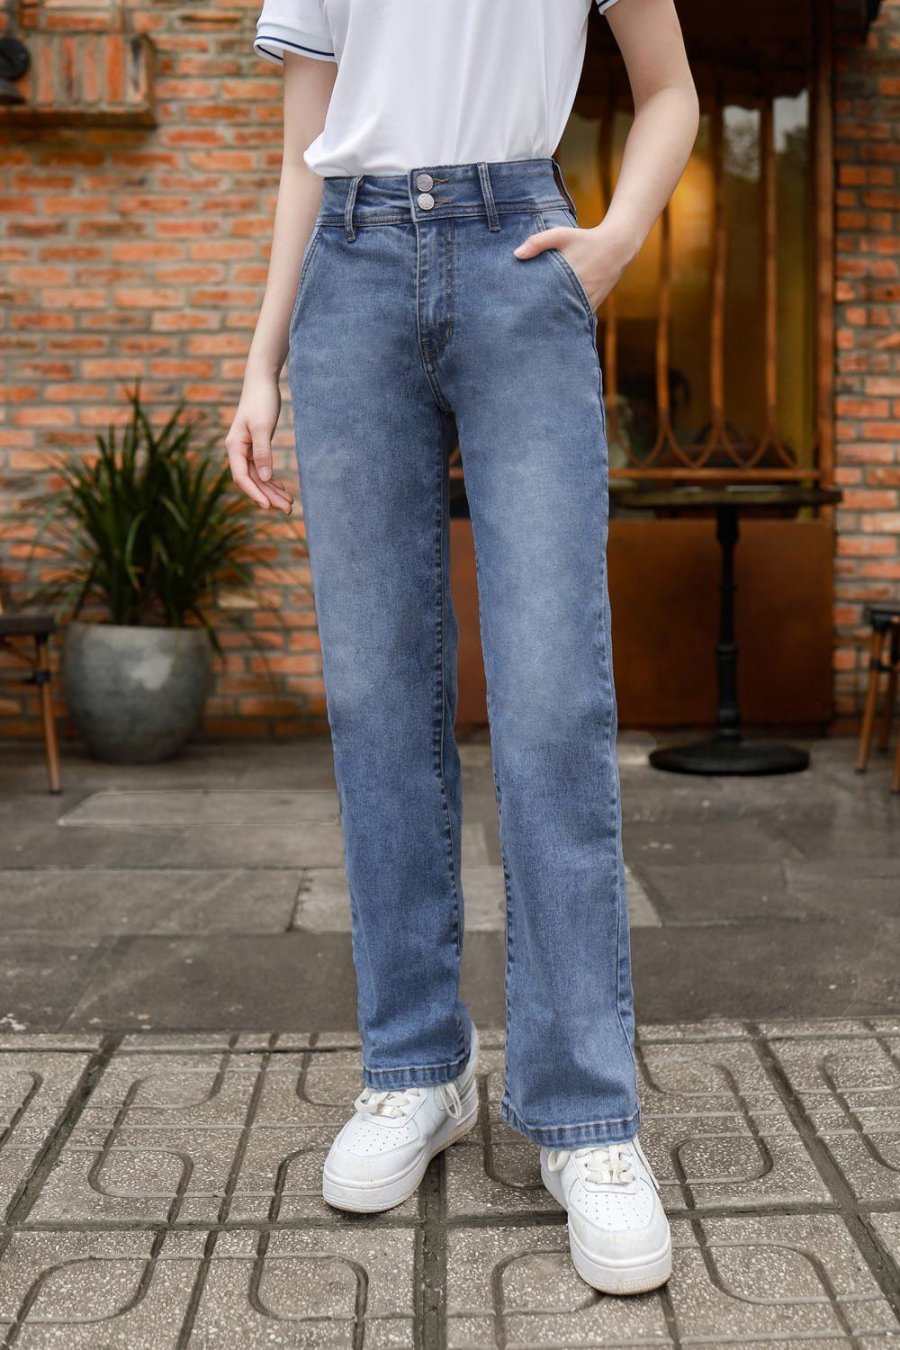 Quần jeans ống đứng nổi bật với kiểu dáng ôm vừa phải, tạo cảm giác thoải mái mà vẫn giấu đi những phần cơ thể không hoàn hảo